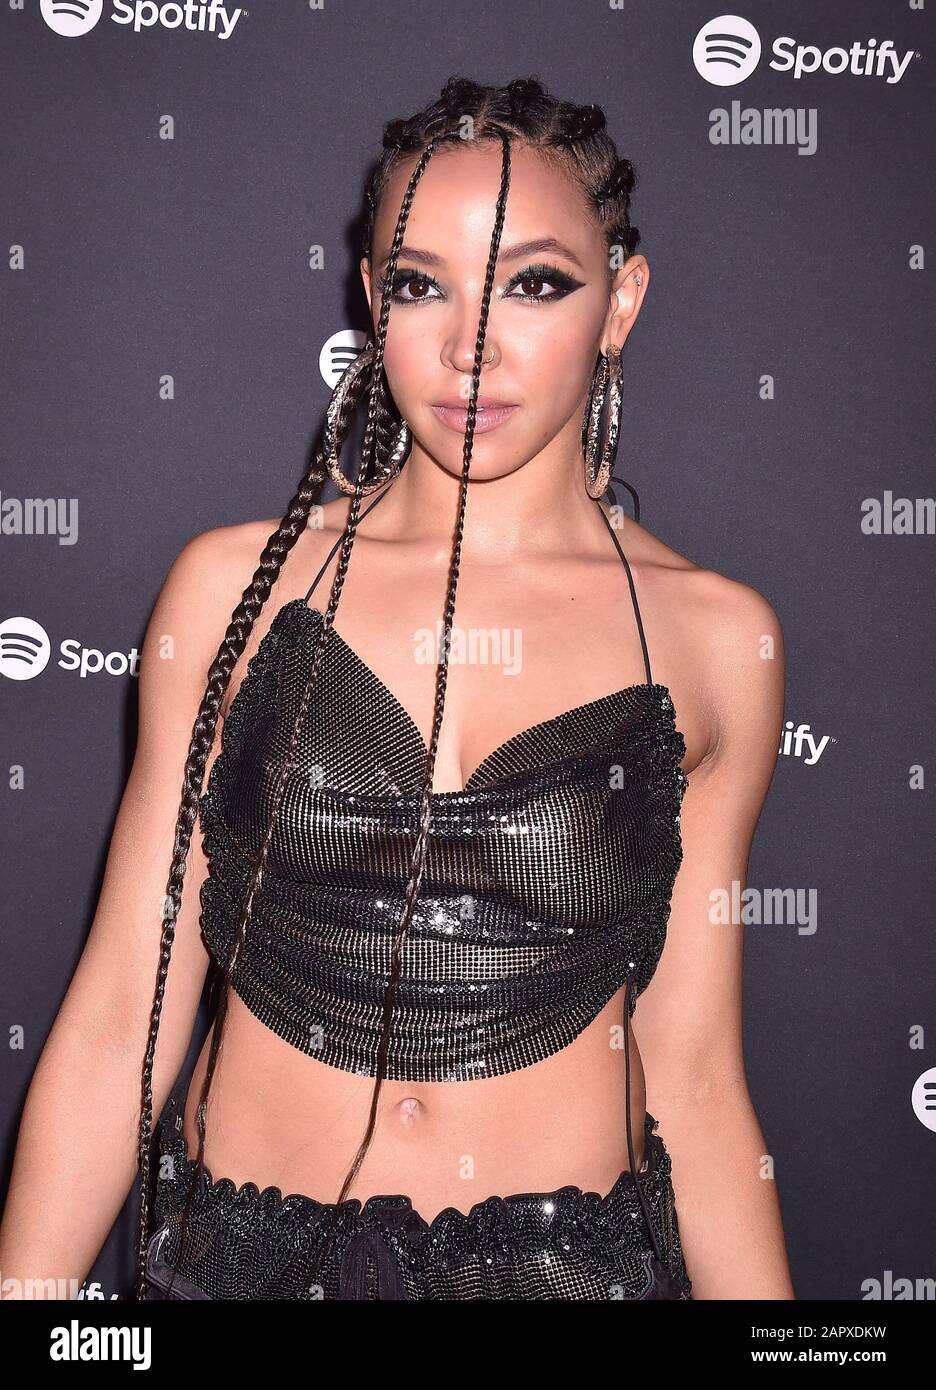 West HOLLYWOOD, CA - 23 JANVIER: Tinashe assiste au Spotify Best New Artist 2020 Party au Lot Studios le 23 janvier 2020 à Los Angeles, Californie. Banque D'Images